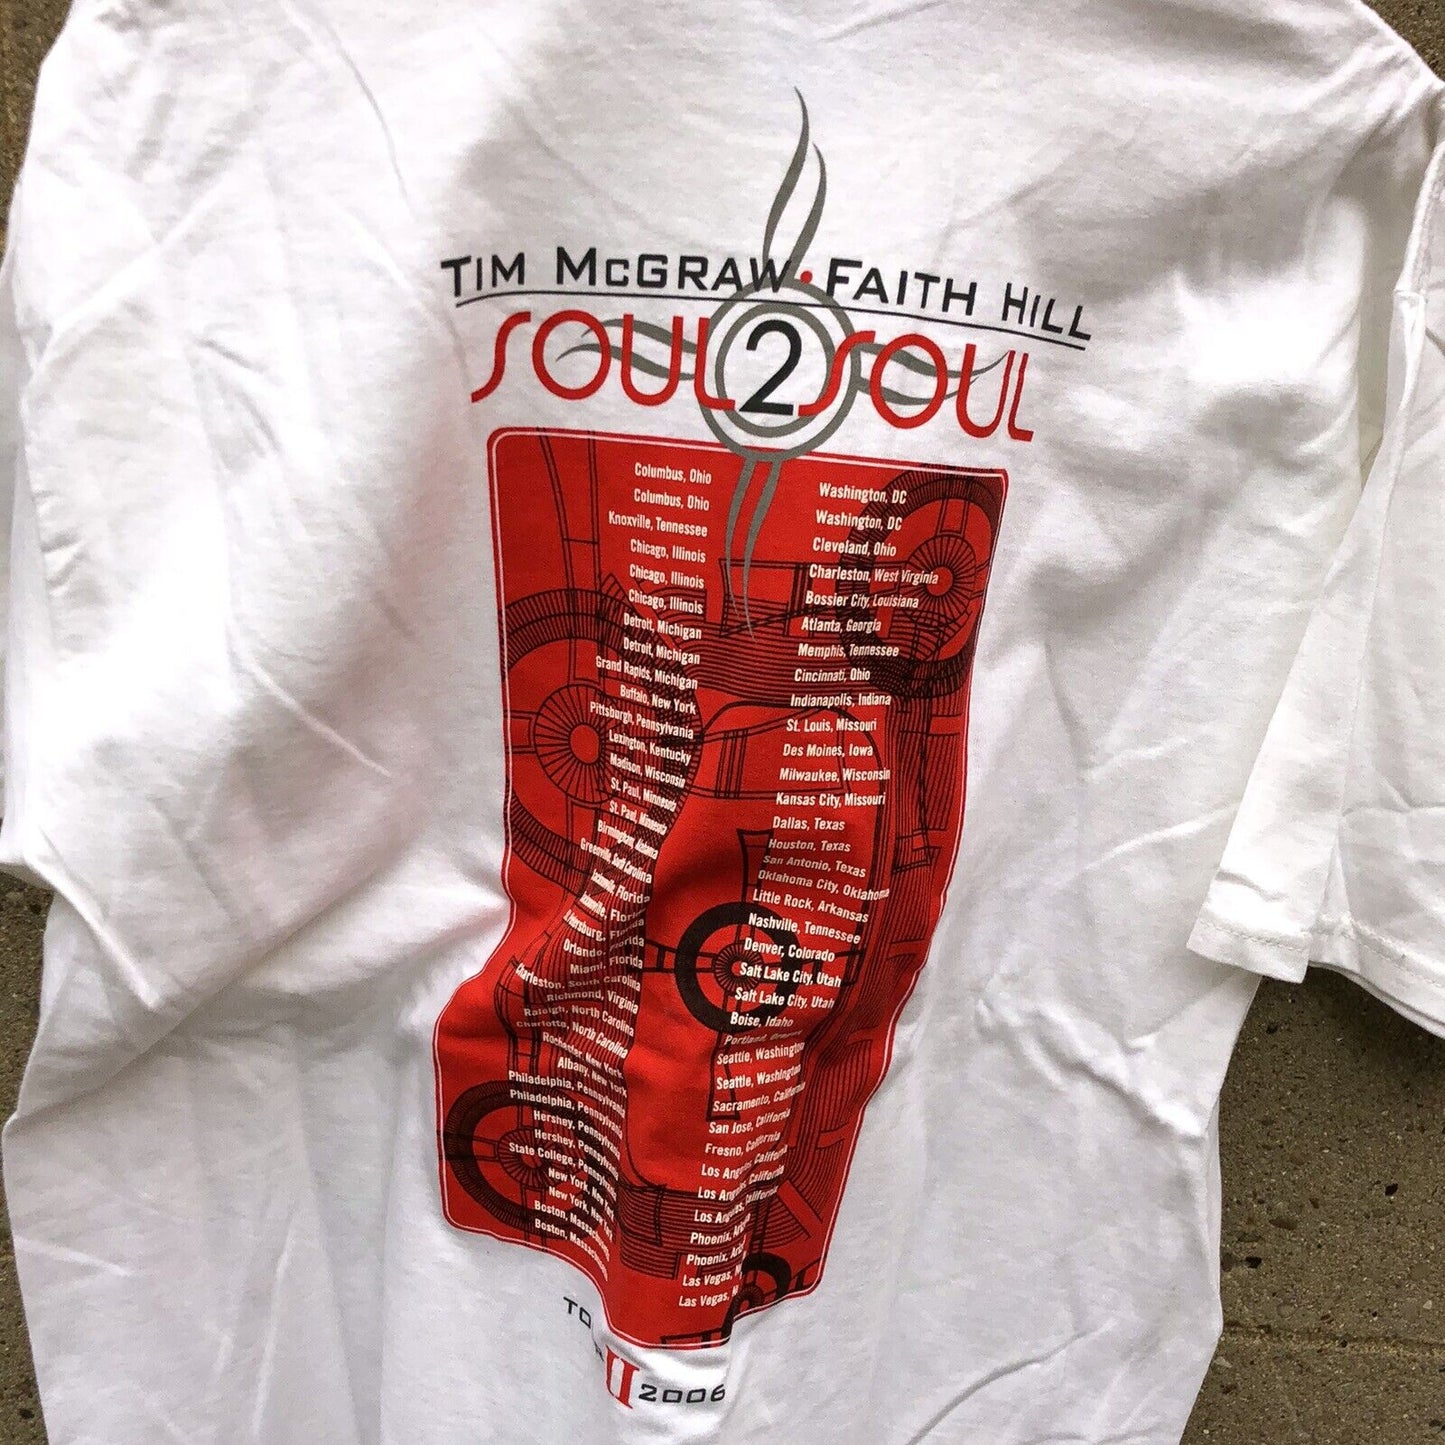 Tim McGraw Faith Hill T-Shirt 100% Cotton Soul 2 Soul Tour Concert Tee Sz Large